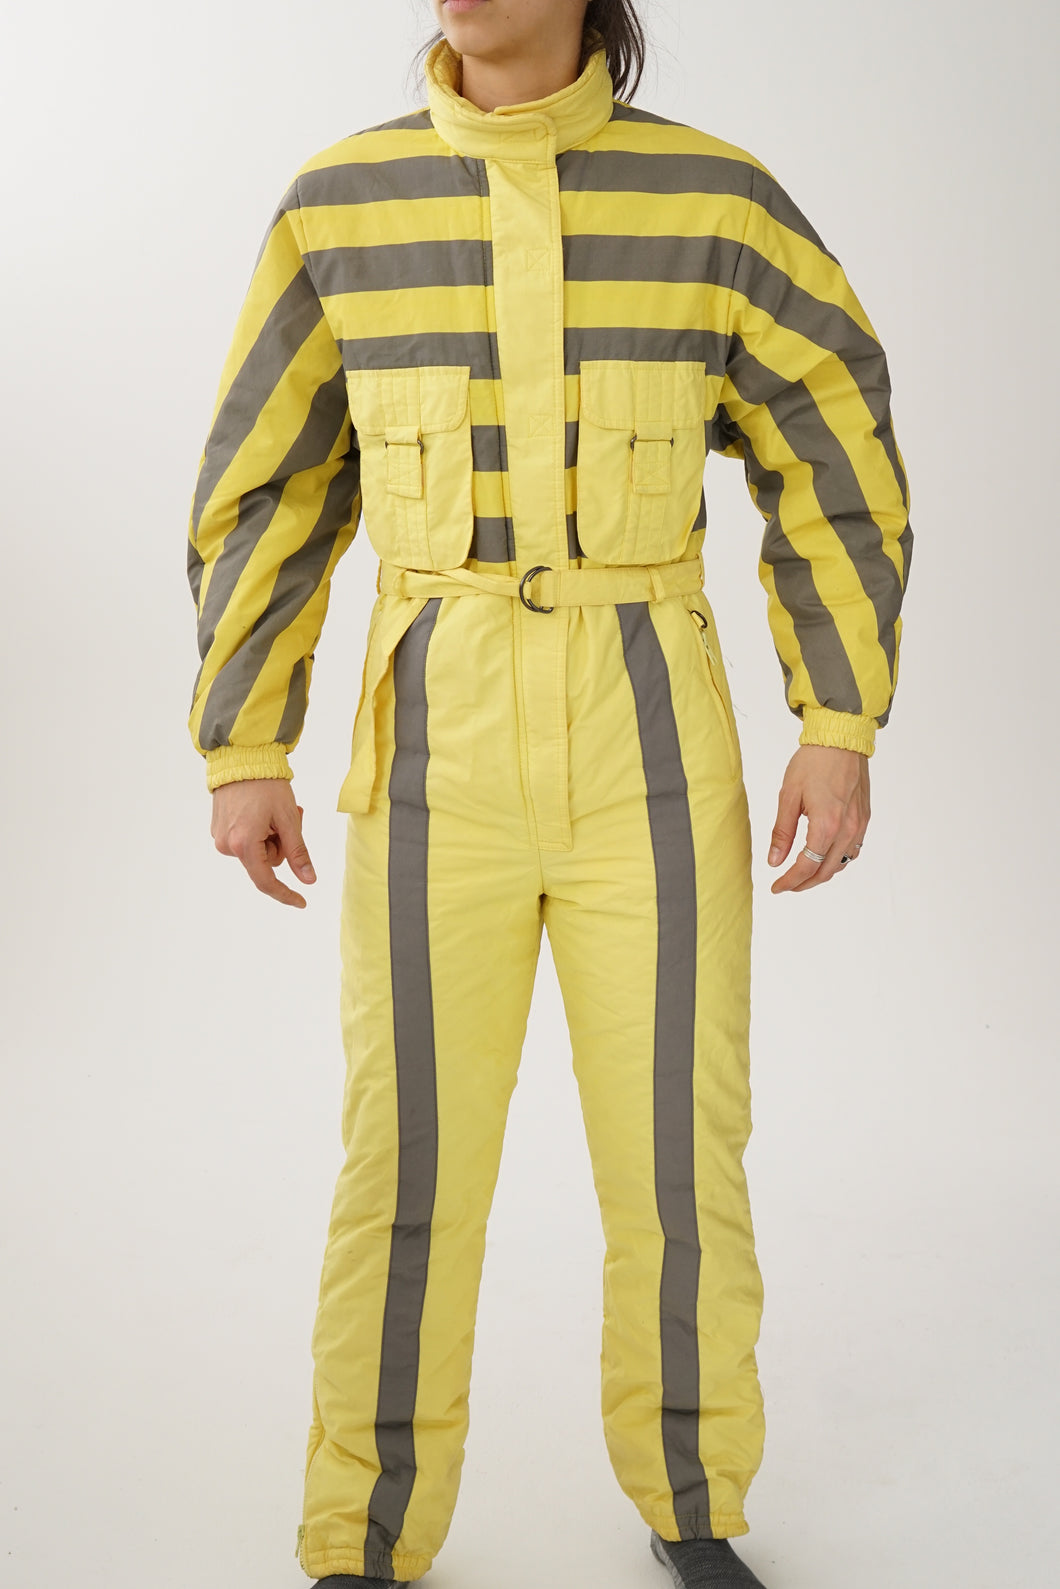 Fou one piece vintage Mistral ski suit, snow suit jaune et lignes grises pour femme taille 8 (S)